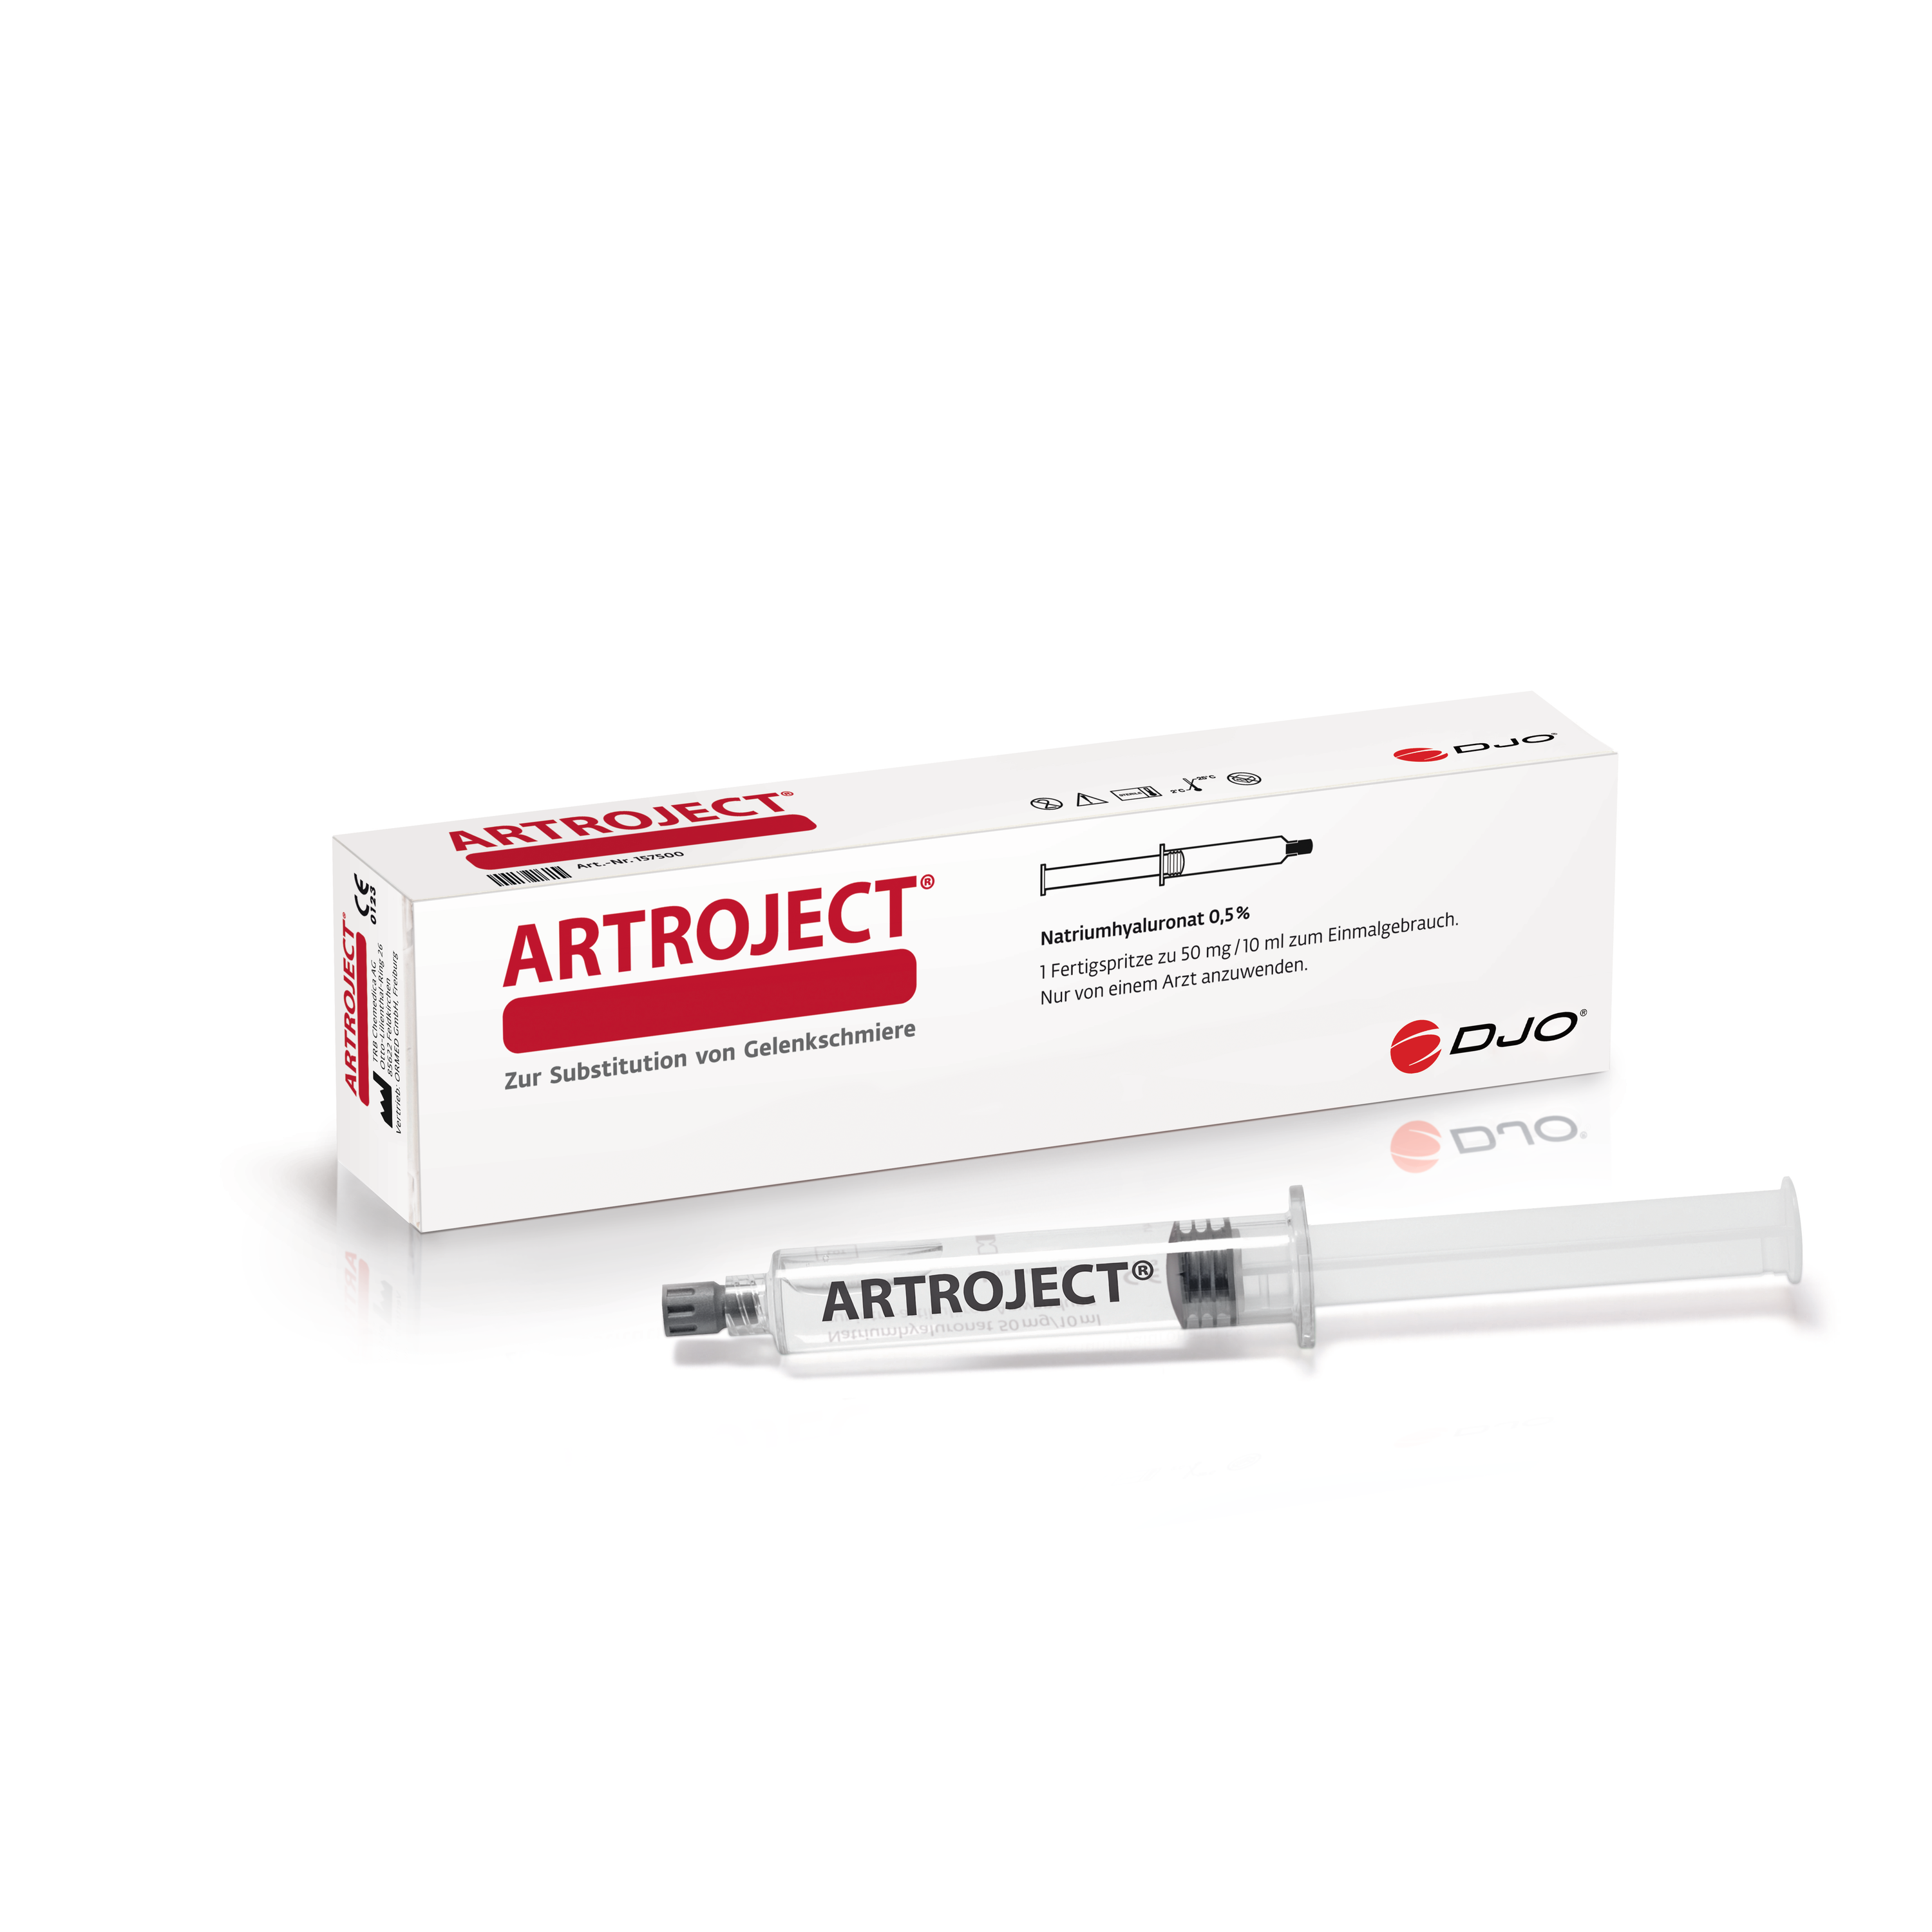 Produktbild ARTROJECT® 1er Fertigspritze, 50mg:10ml, Intraoperative Hyaluronsäure, Inhalt 10 ml